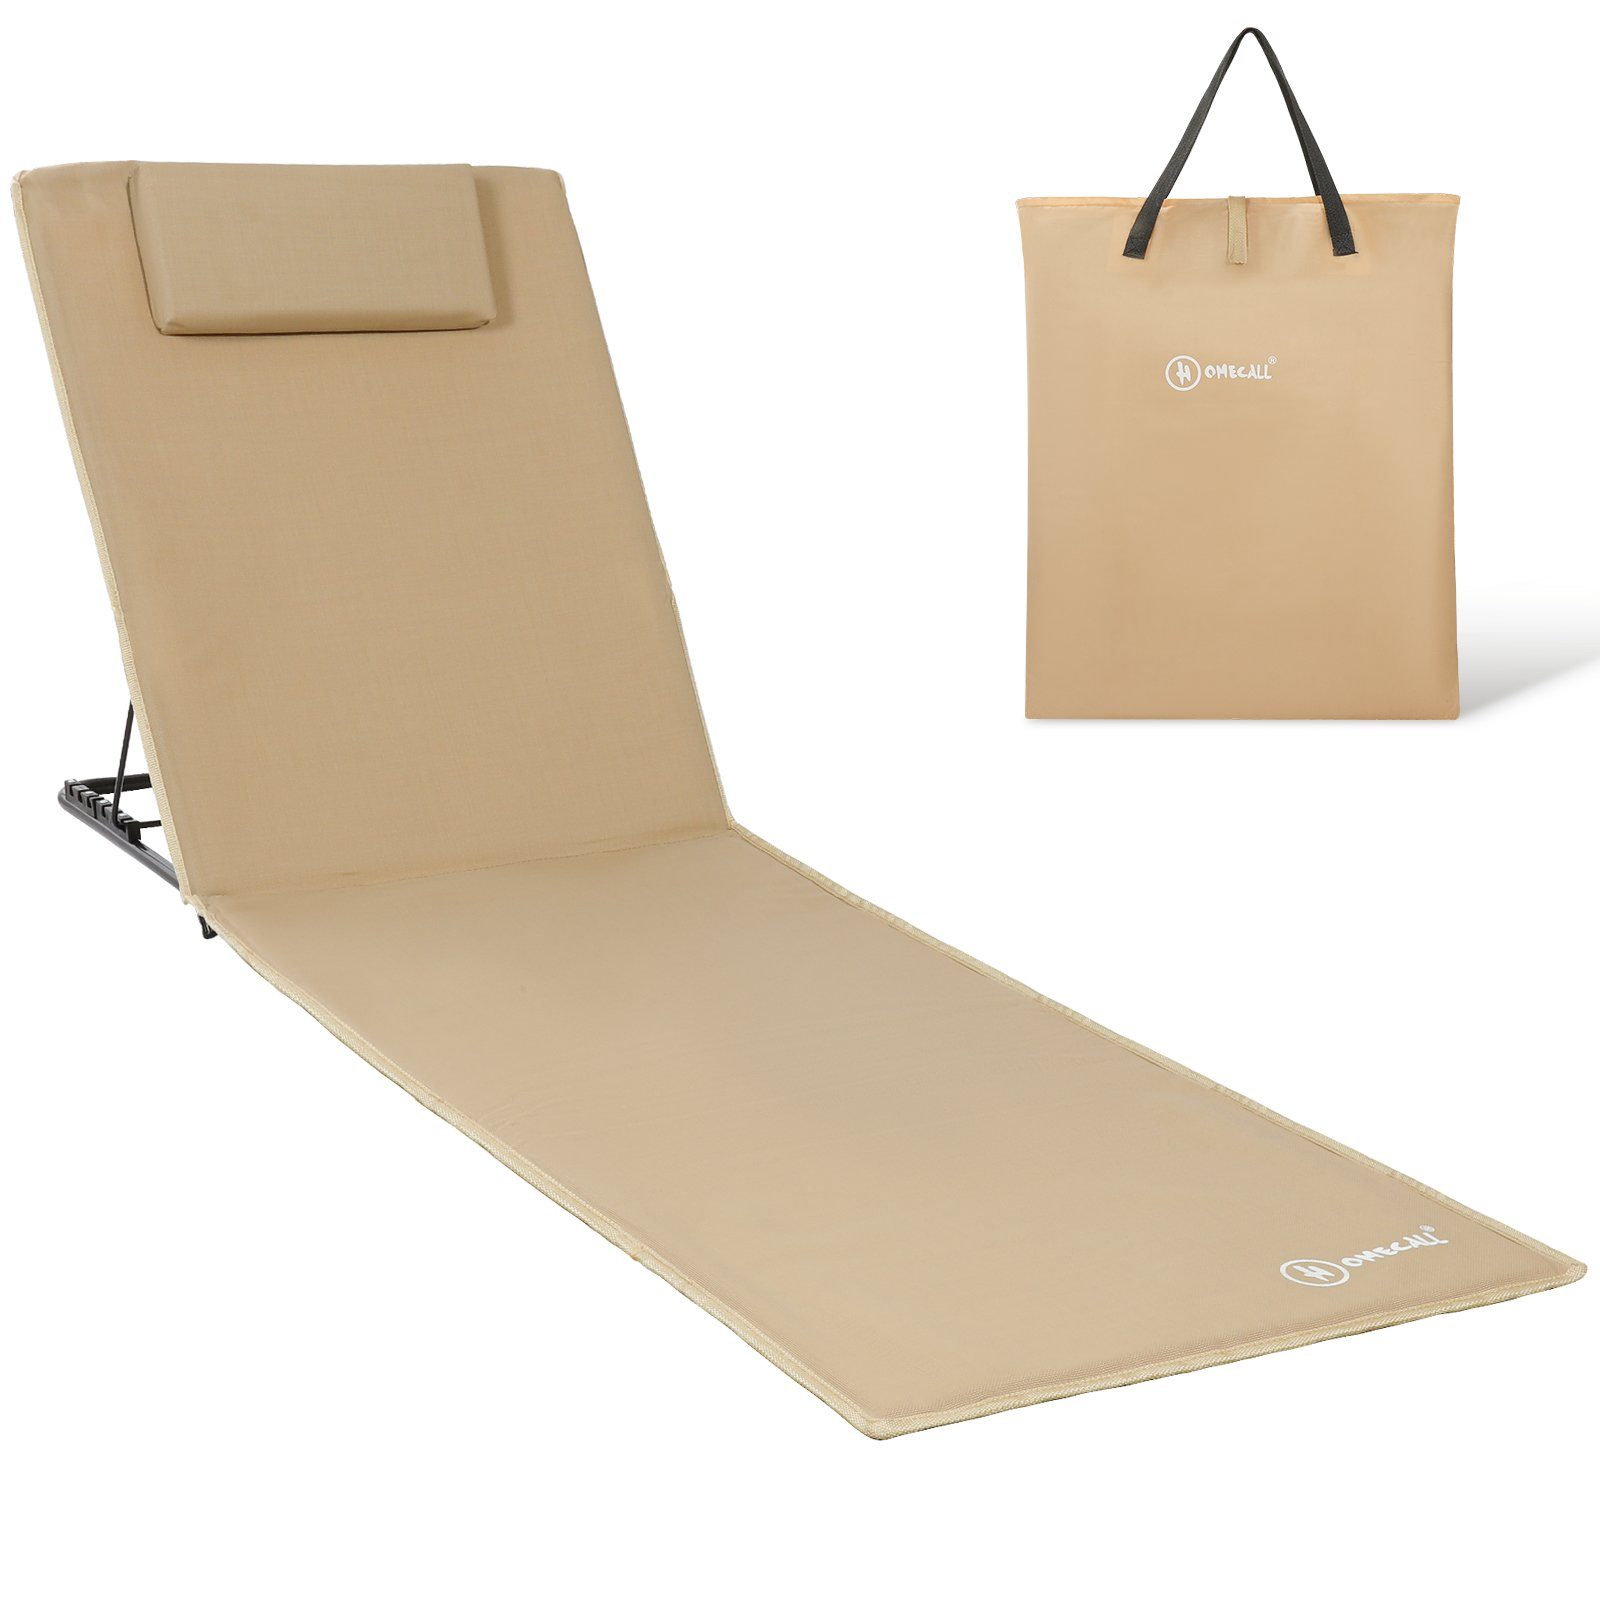 HOMECALL Strandtuch Strandmatte Liegestuhl Strandliege klappbar leicht, Gepolsterte Textilene, Schnell Trocknet, 6 fach verstellbarer, mit Tasche, 200x60cm beige